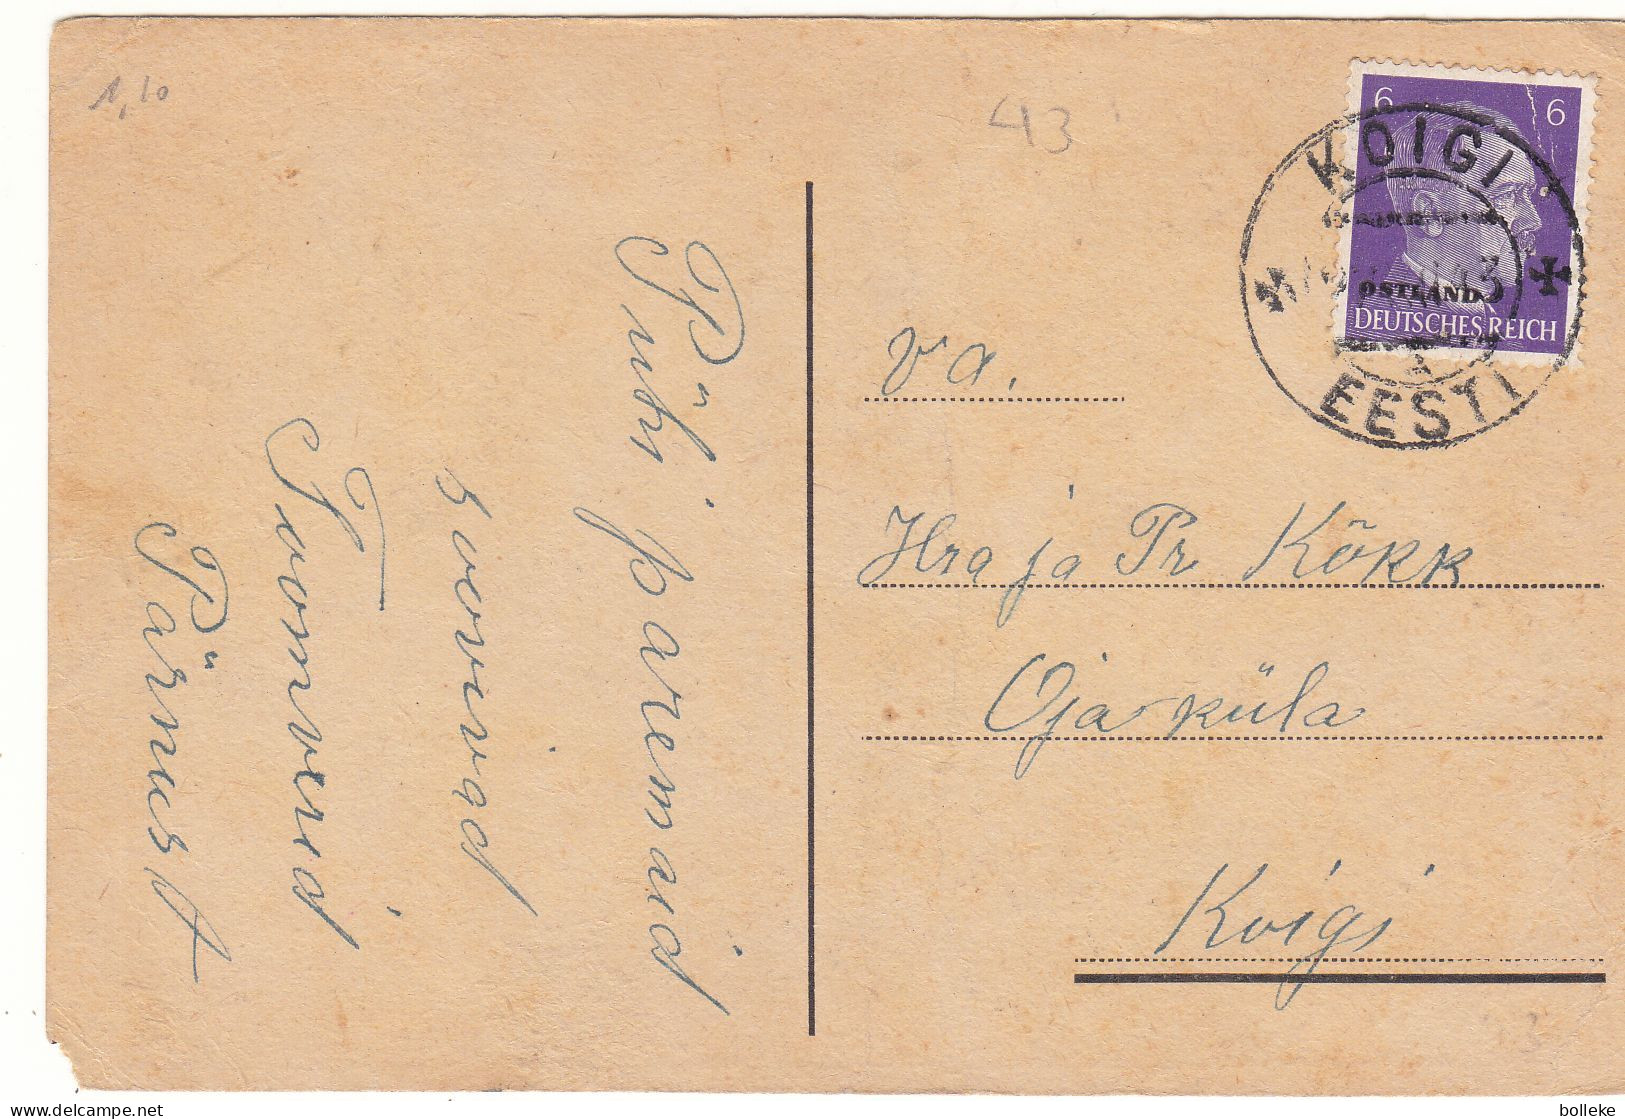 Allemagne - Ostland - Carte Postale De 1943 - Oblit Koigi - Exp Vers Koigi - Hitler - - Occupation 1938-45